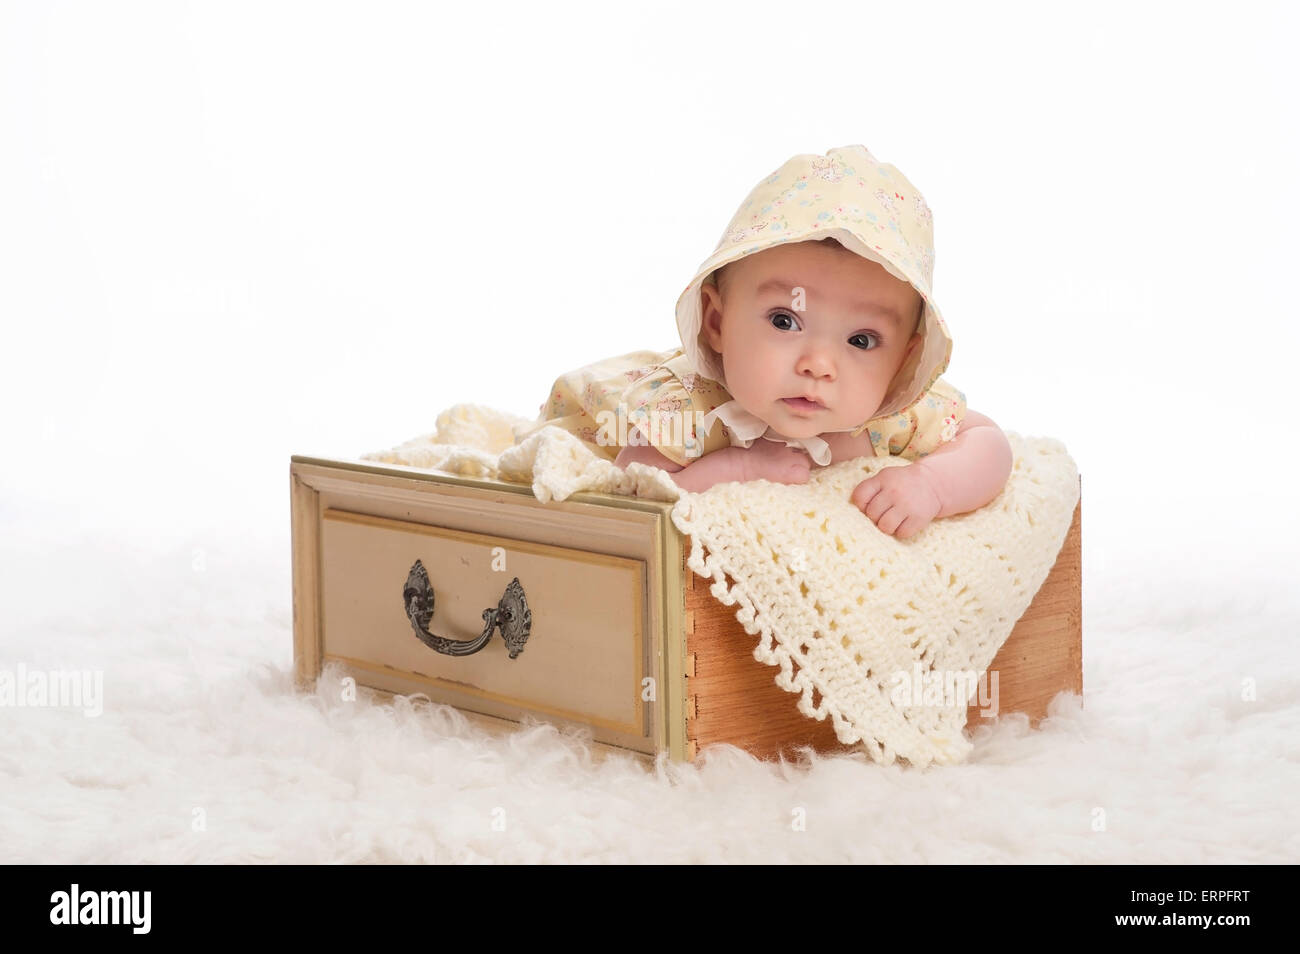 Un bébé de trois mois fille portant un bonnet jaune et couché dans un tiroir jaune vintage. Banque D'Images